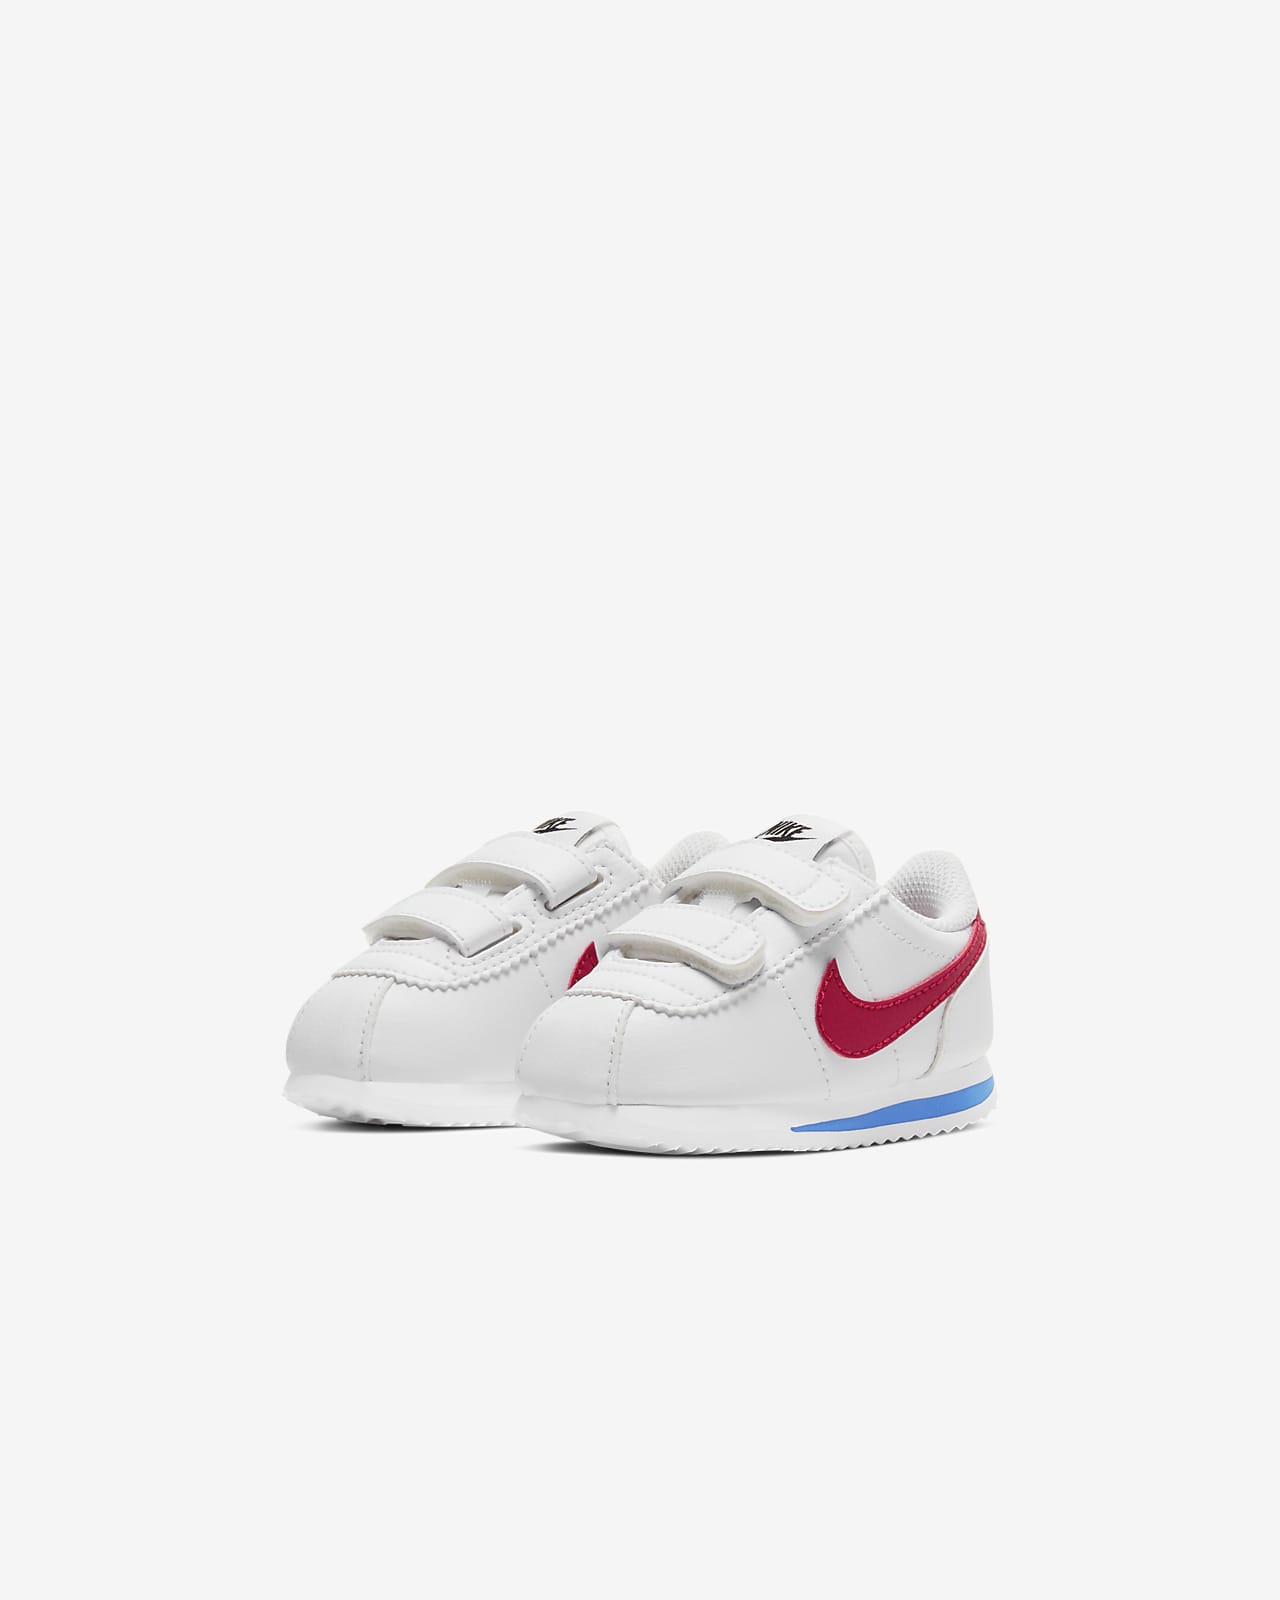 Nike Cortez Basic Baby and Toddler Shoe 